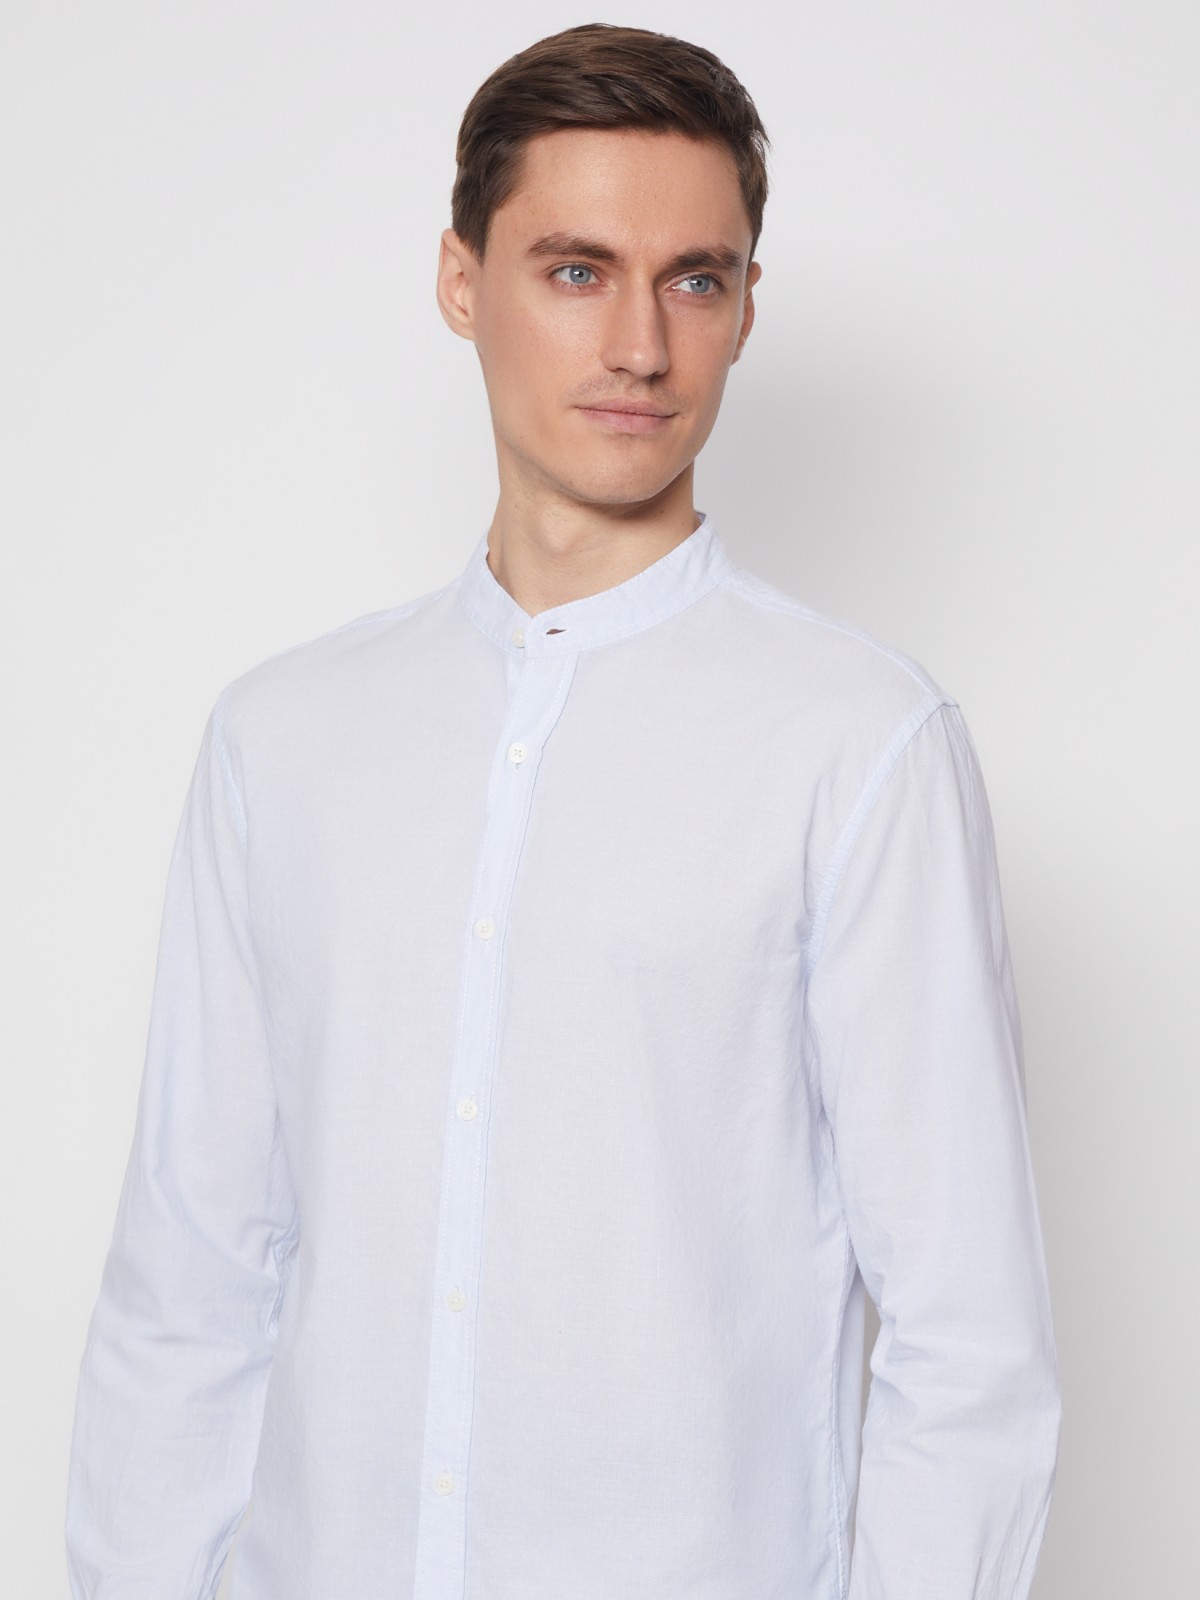 Хлопковая рубашка с длинным рукавом zolla 012232159031, цвет светло-голубой, размер S - фото 3